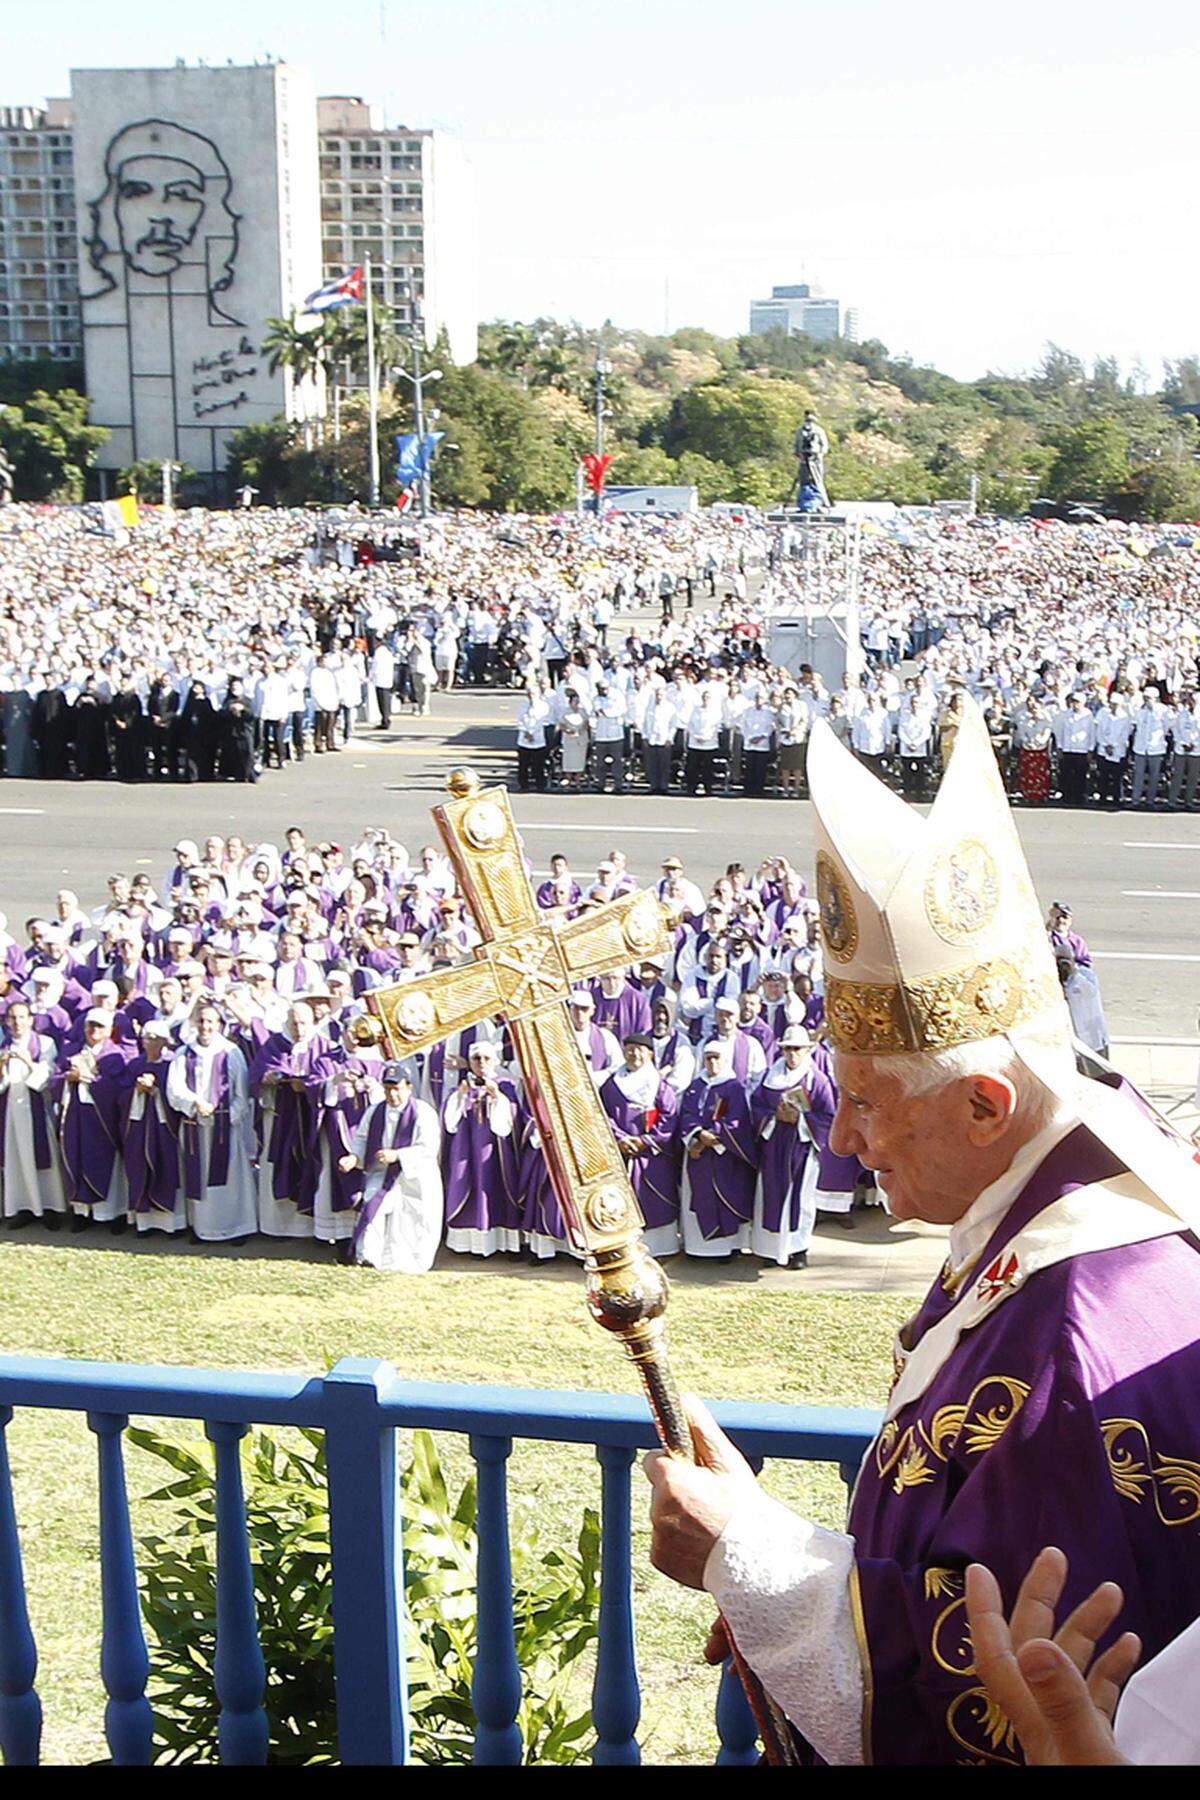 Eine feierlichen Messe auf dem Platz der Revolution in Havanna stand am Mittwoch am Ende des Papst-Besuchs in Kuba. Benedikt XVI. hat bei der Messe volle Religionsfreiheit und die Anerkennung der katholischen Kirche in Kuba verlangt.